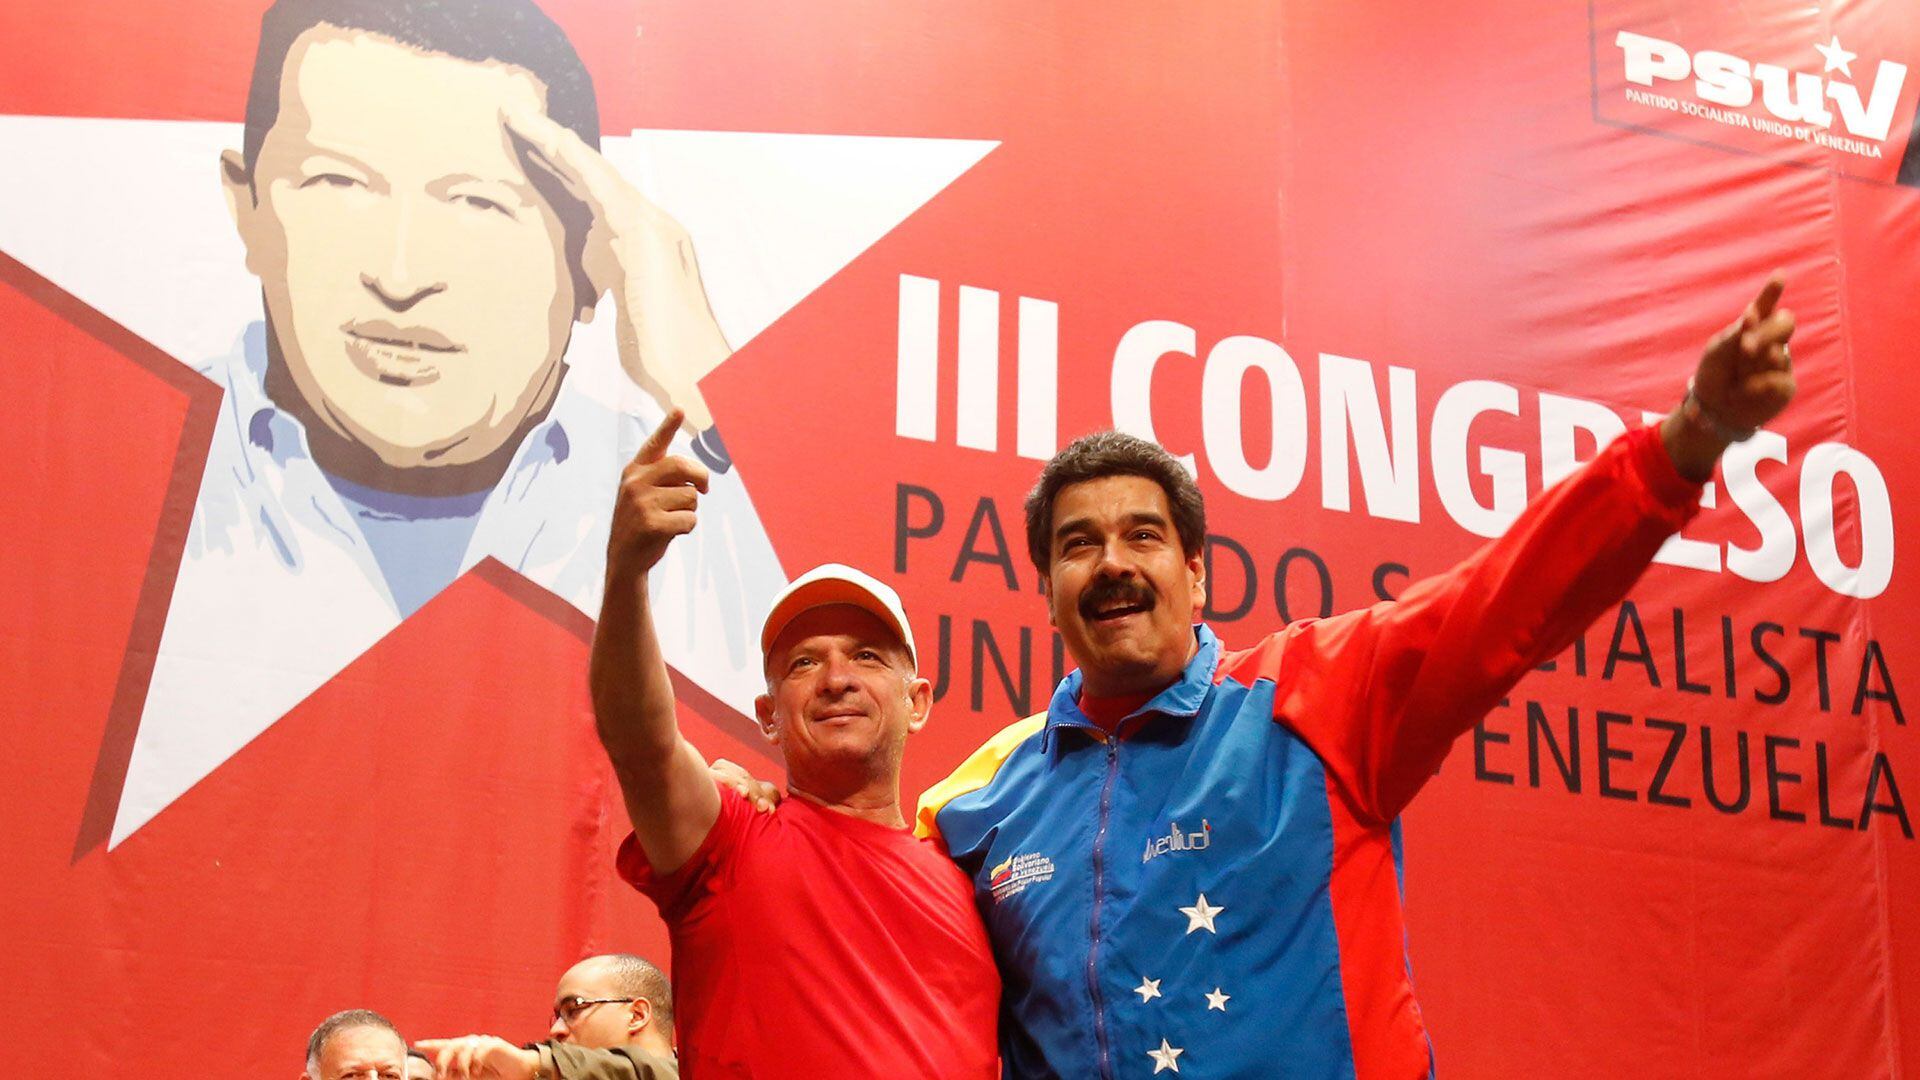 El "Pollo" Carvajal pidió a sus camaradas de armas que se aparten del régimen chavista y permitan el ingreso de ayuda humanitaria a Venezuela (Reuters)